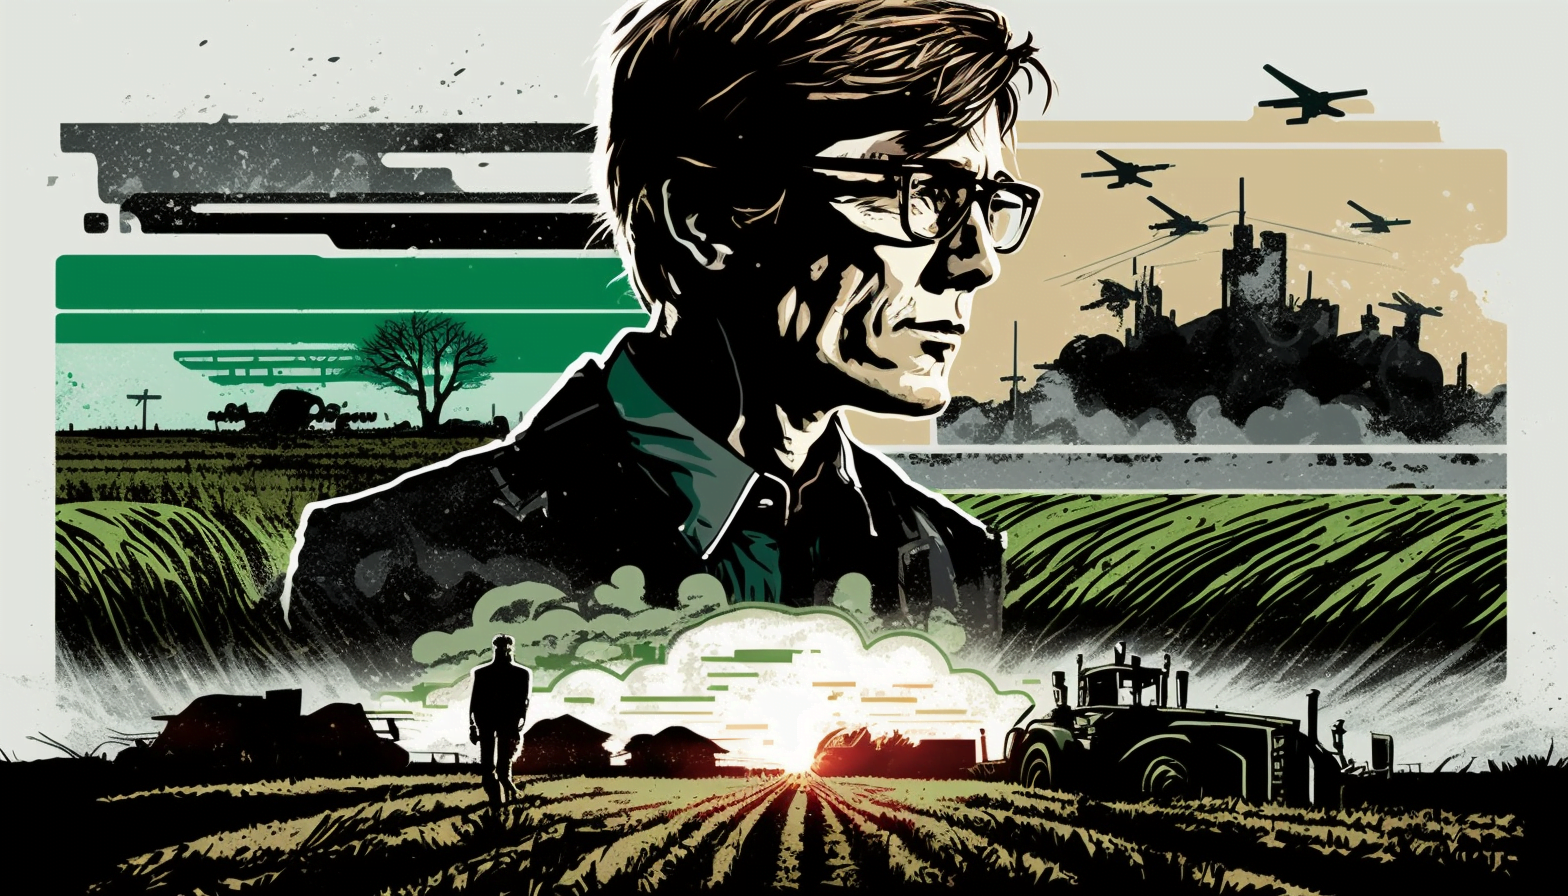 Dévoilement de la stratégie : Pourquoi Bill Gates investit-il massivement dans les terres agricoles ?